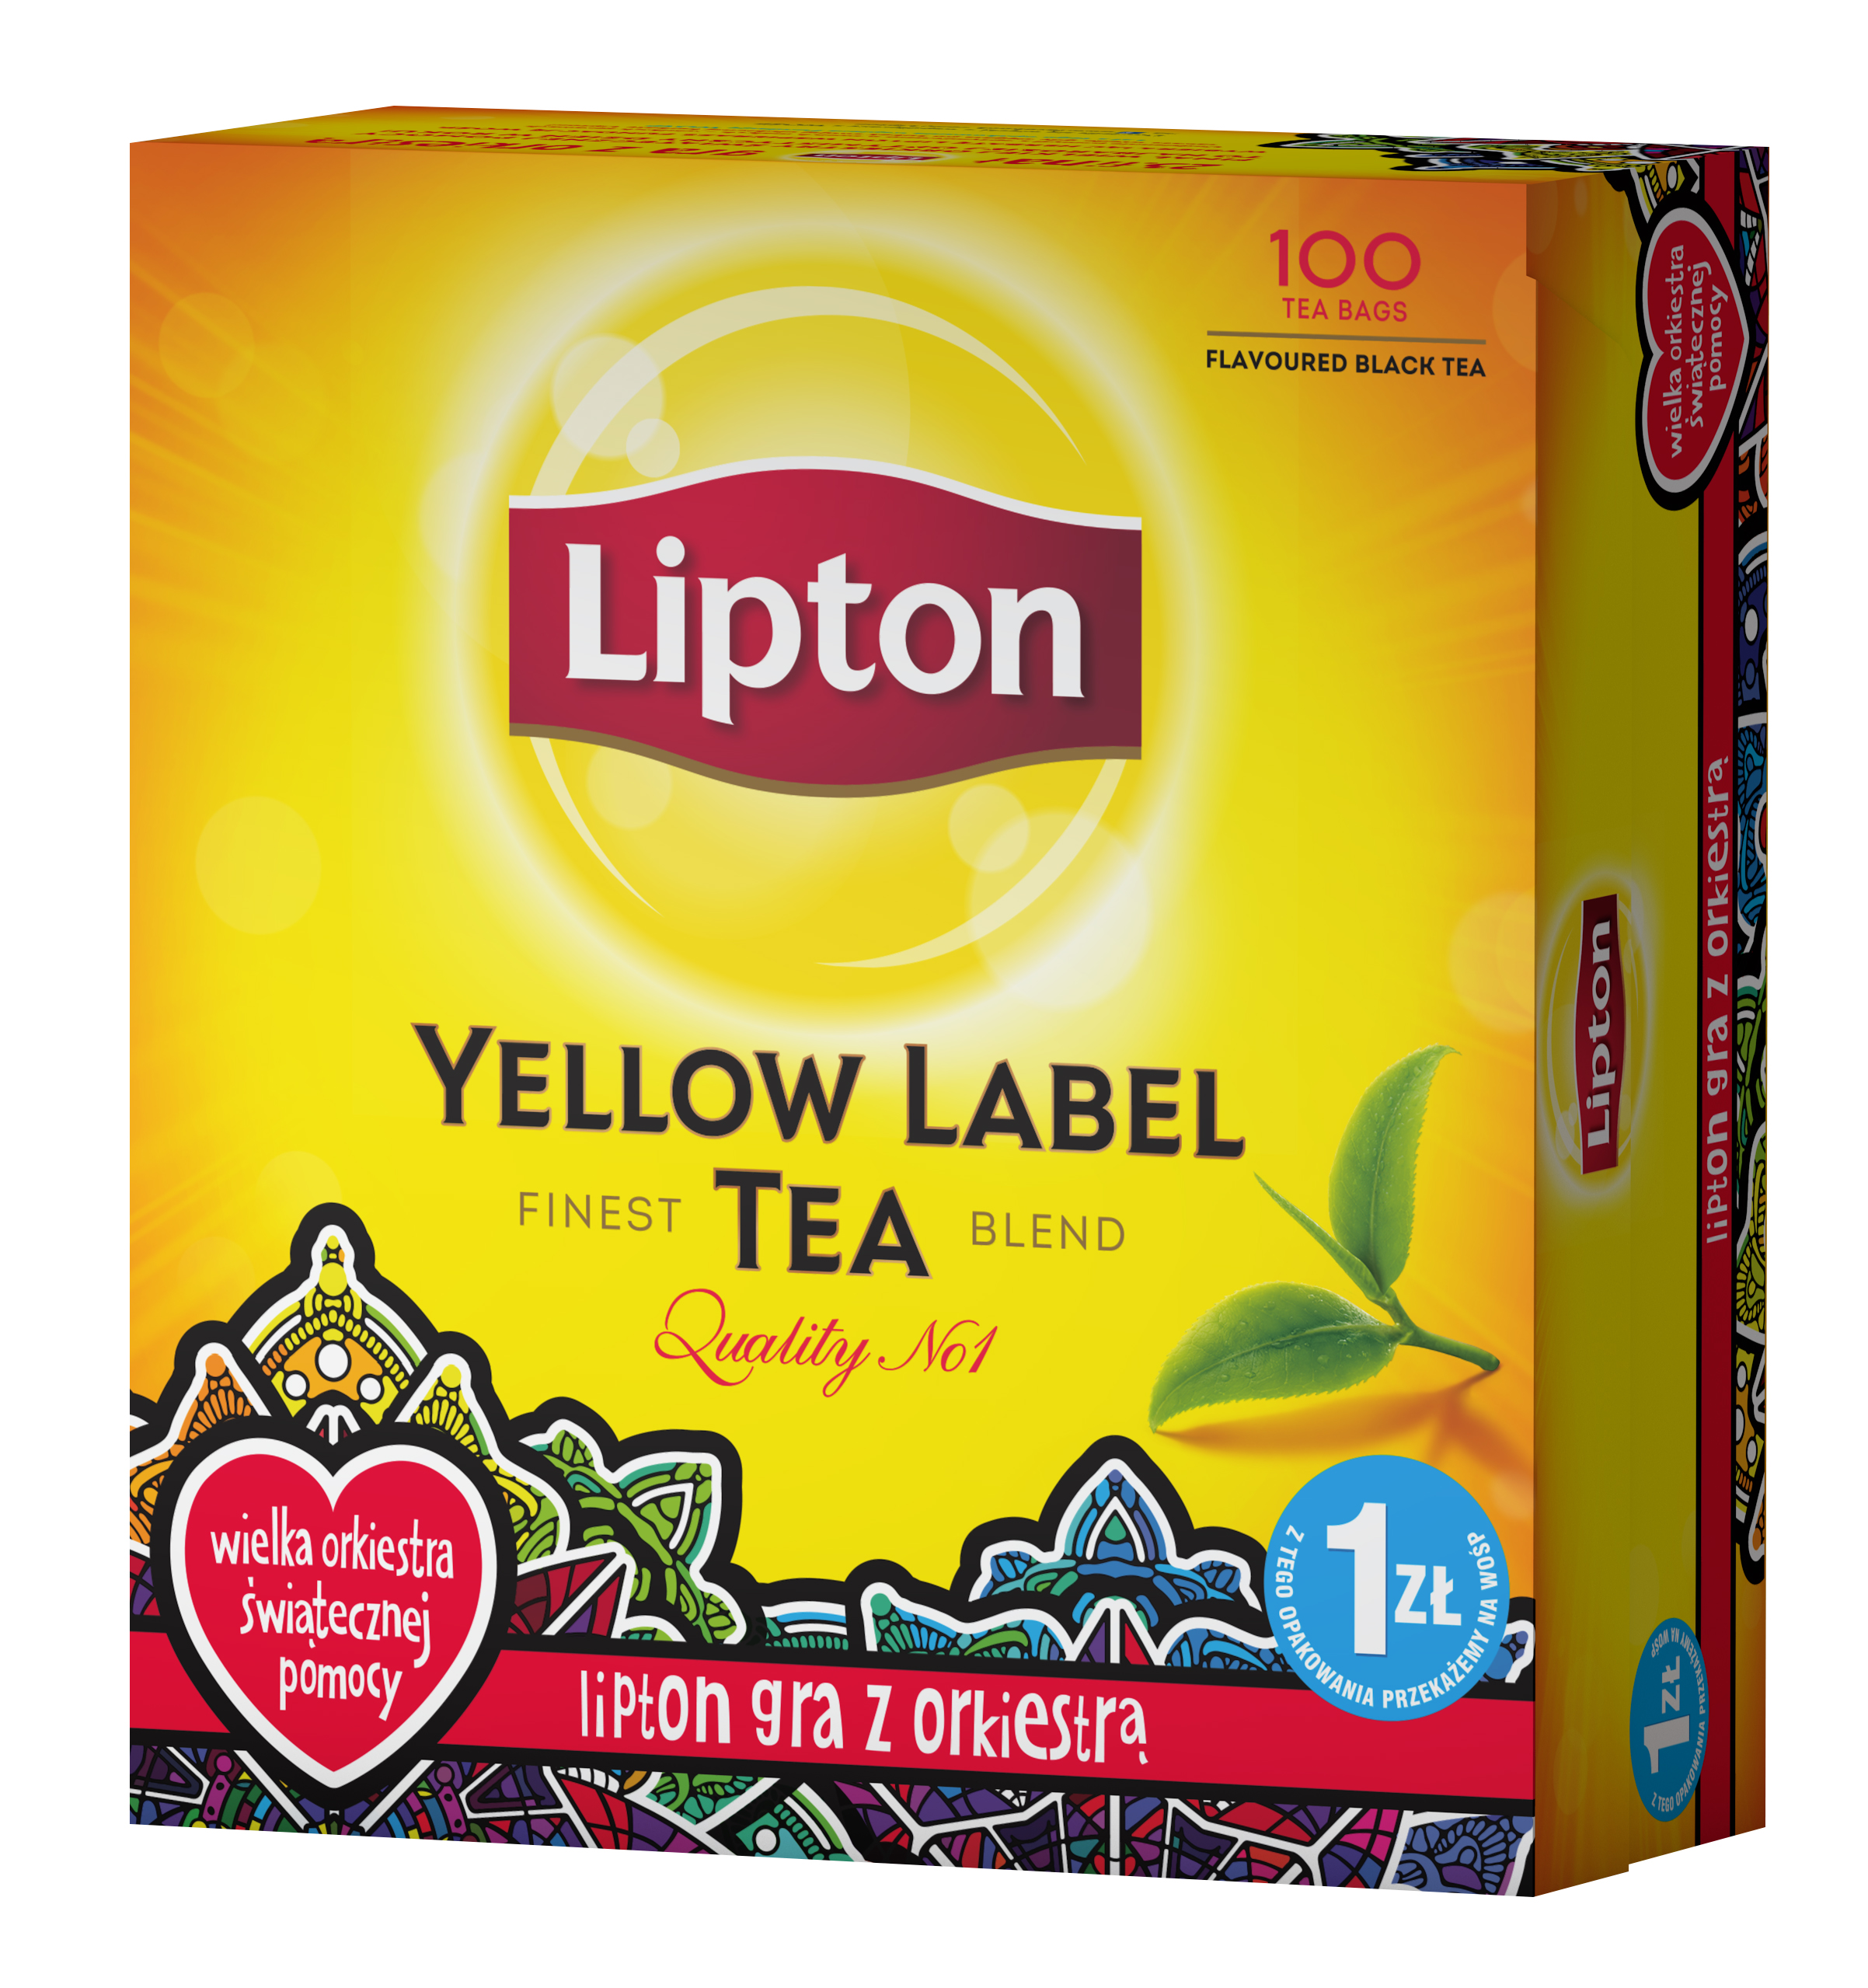 WOŚP i Lipton znów zapraszają na herbatę